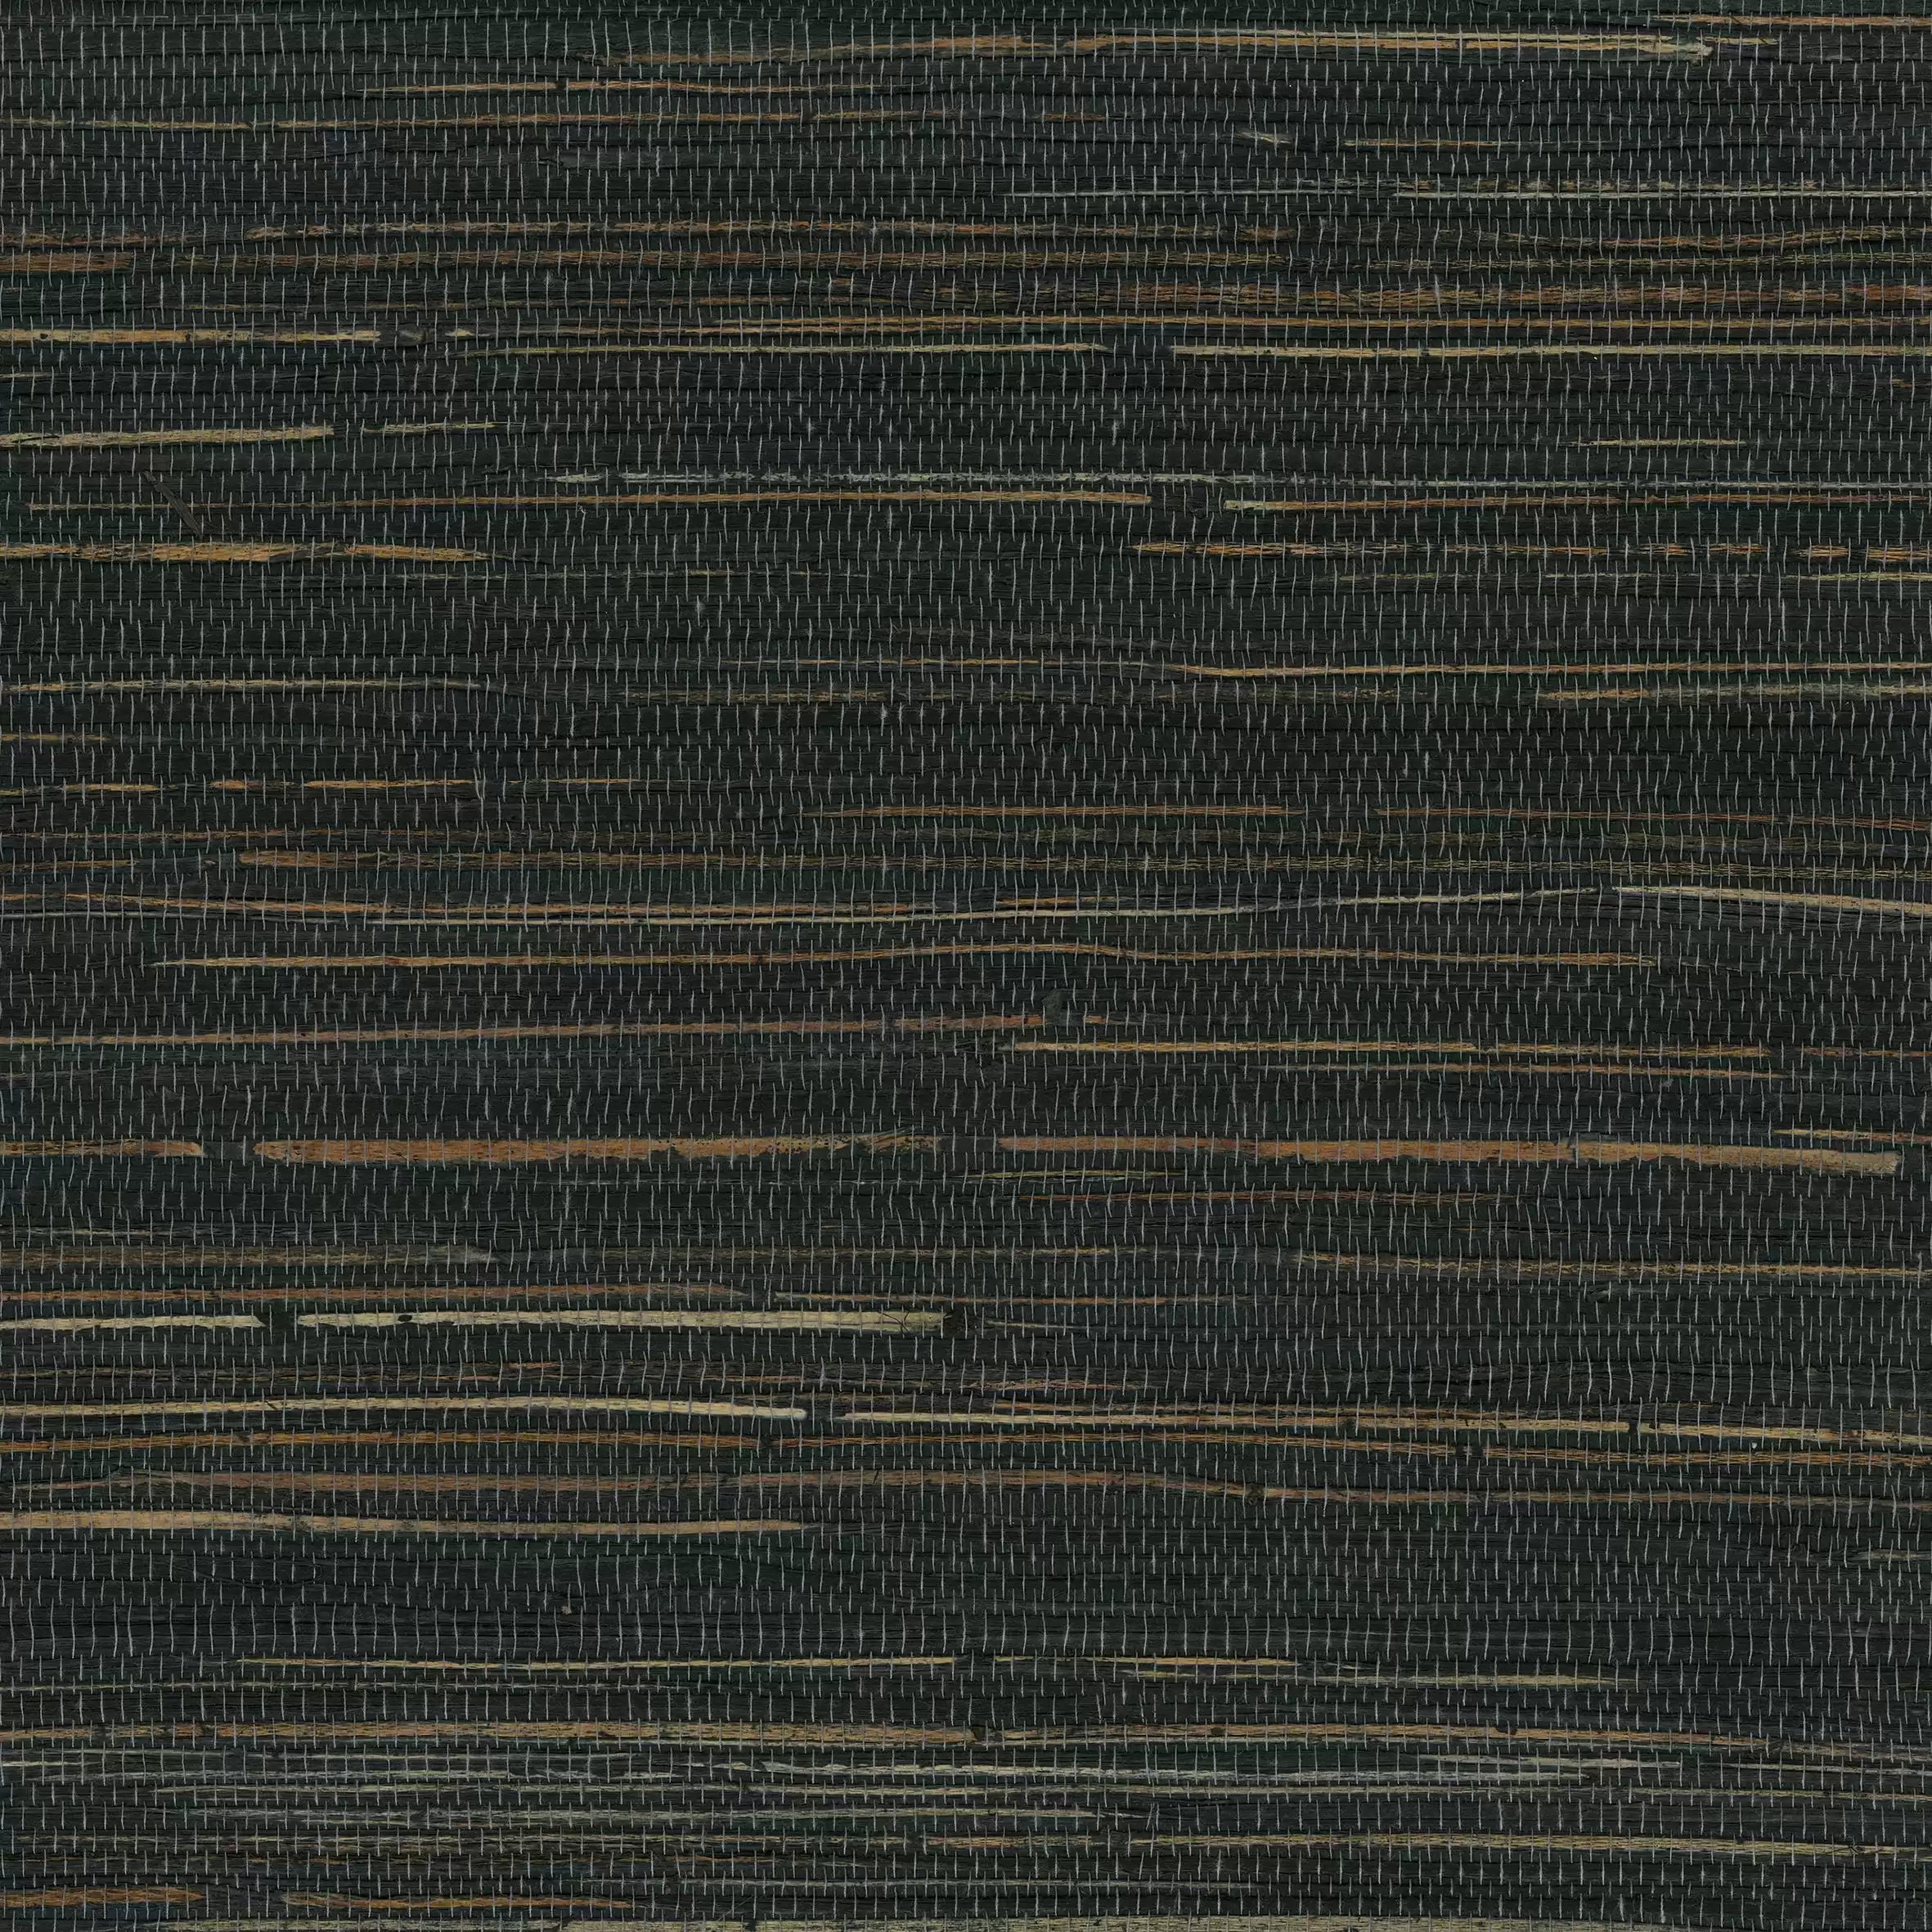 Kanoko Grasscloth 2 Wallpaper W7690-17 By Osborne & Little